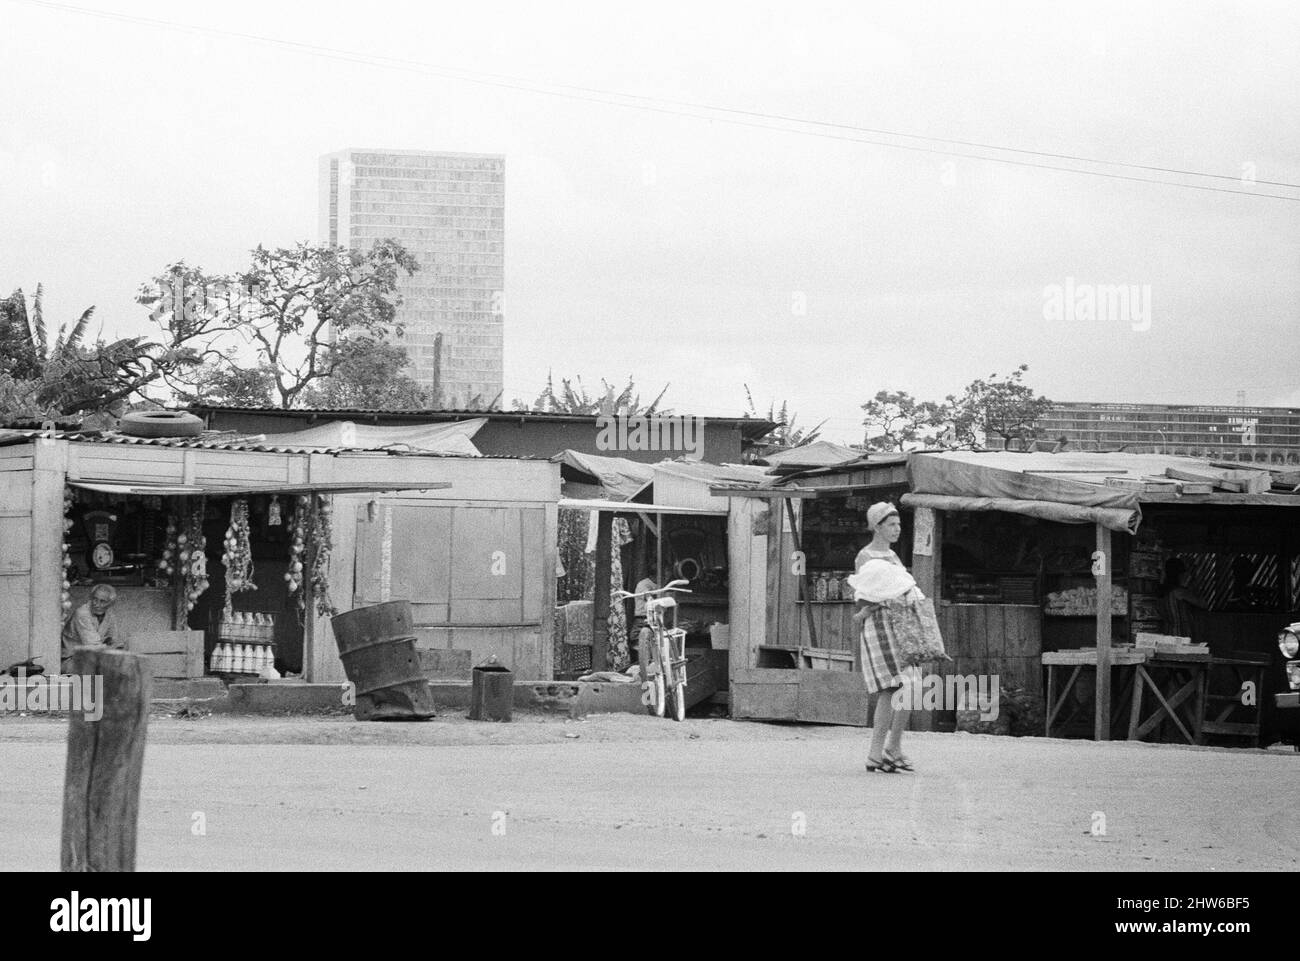 Vieux et nouveau, avec Brasilia , la ville prévue qui est devenue la capitale du Brésil en 1960, en s'élevant en arrière-plan, les locaux recherchent une affaire dans les magasins de marché de tôle de fortune, photographiés le 1st novembre 1968. Banque D'Images